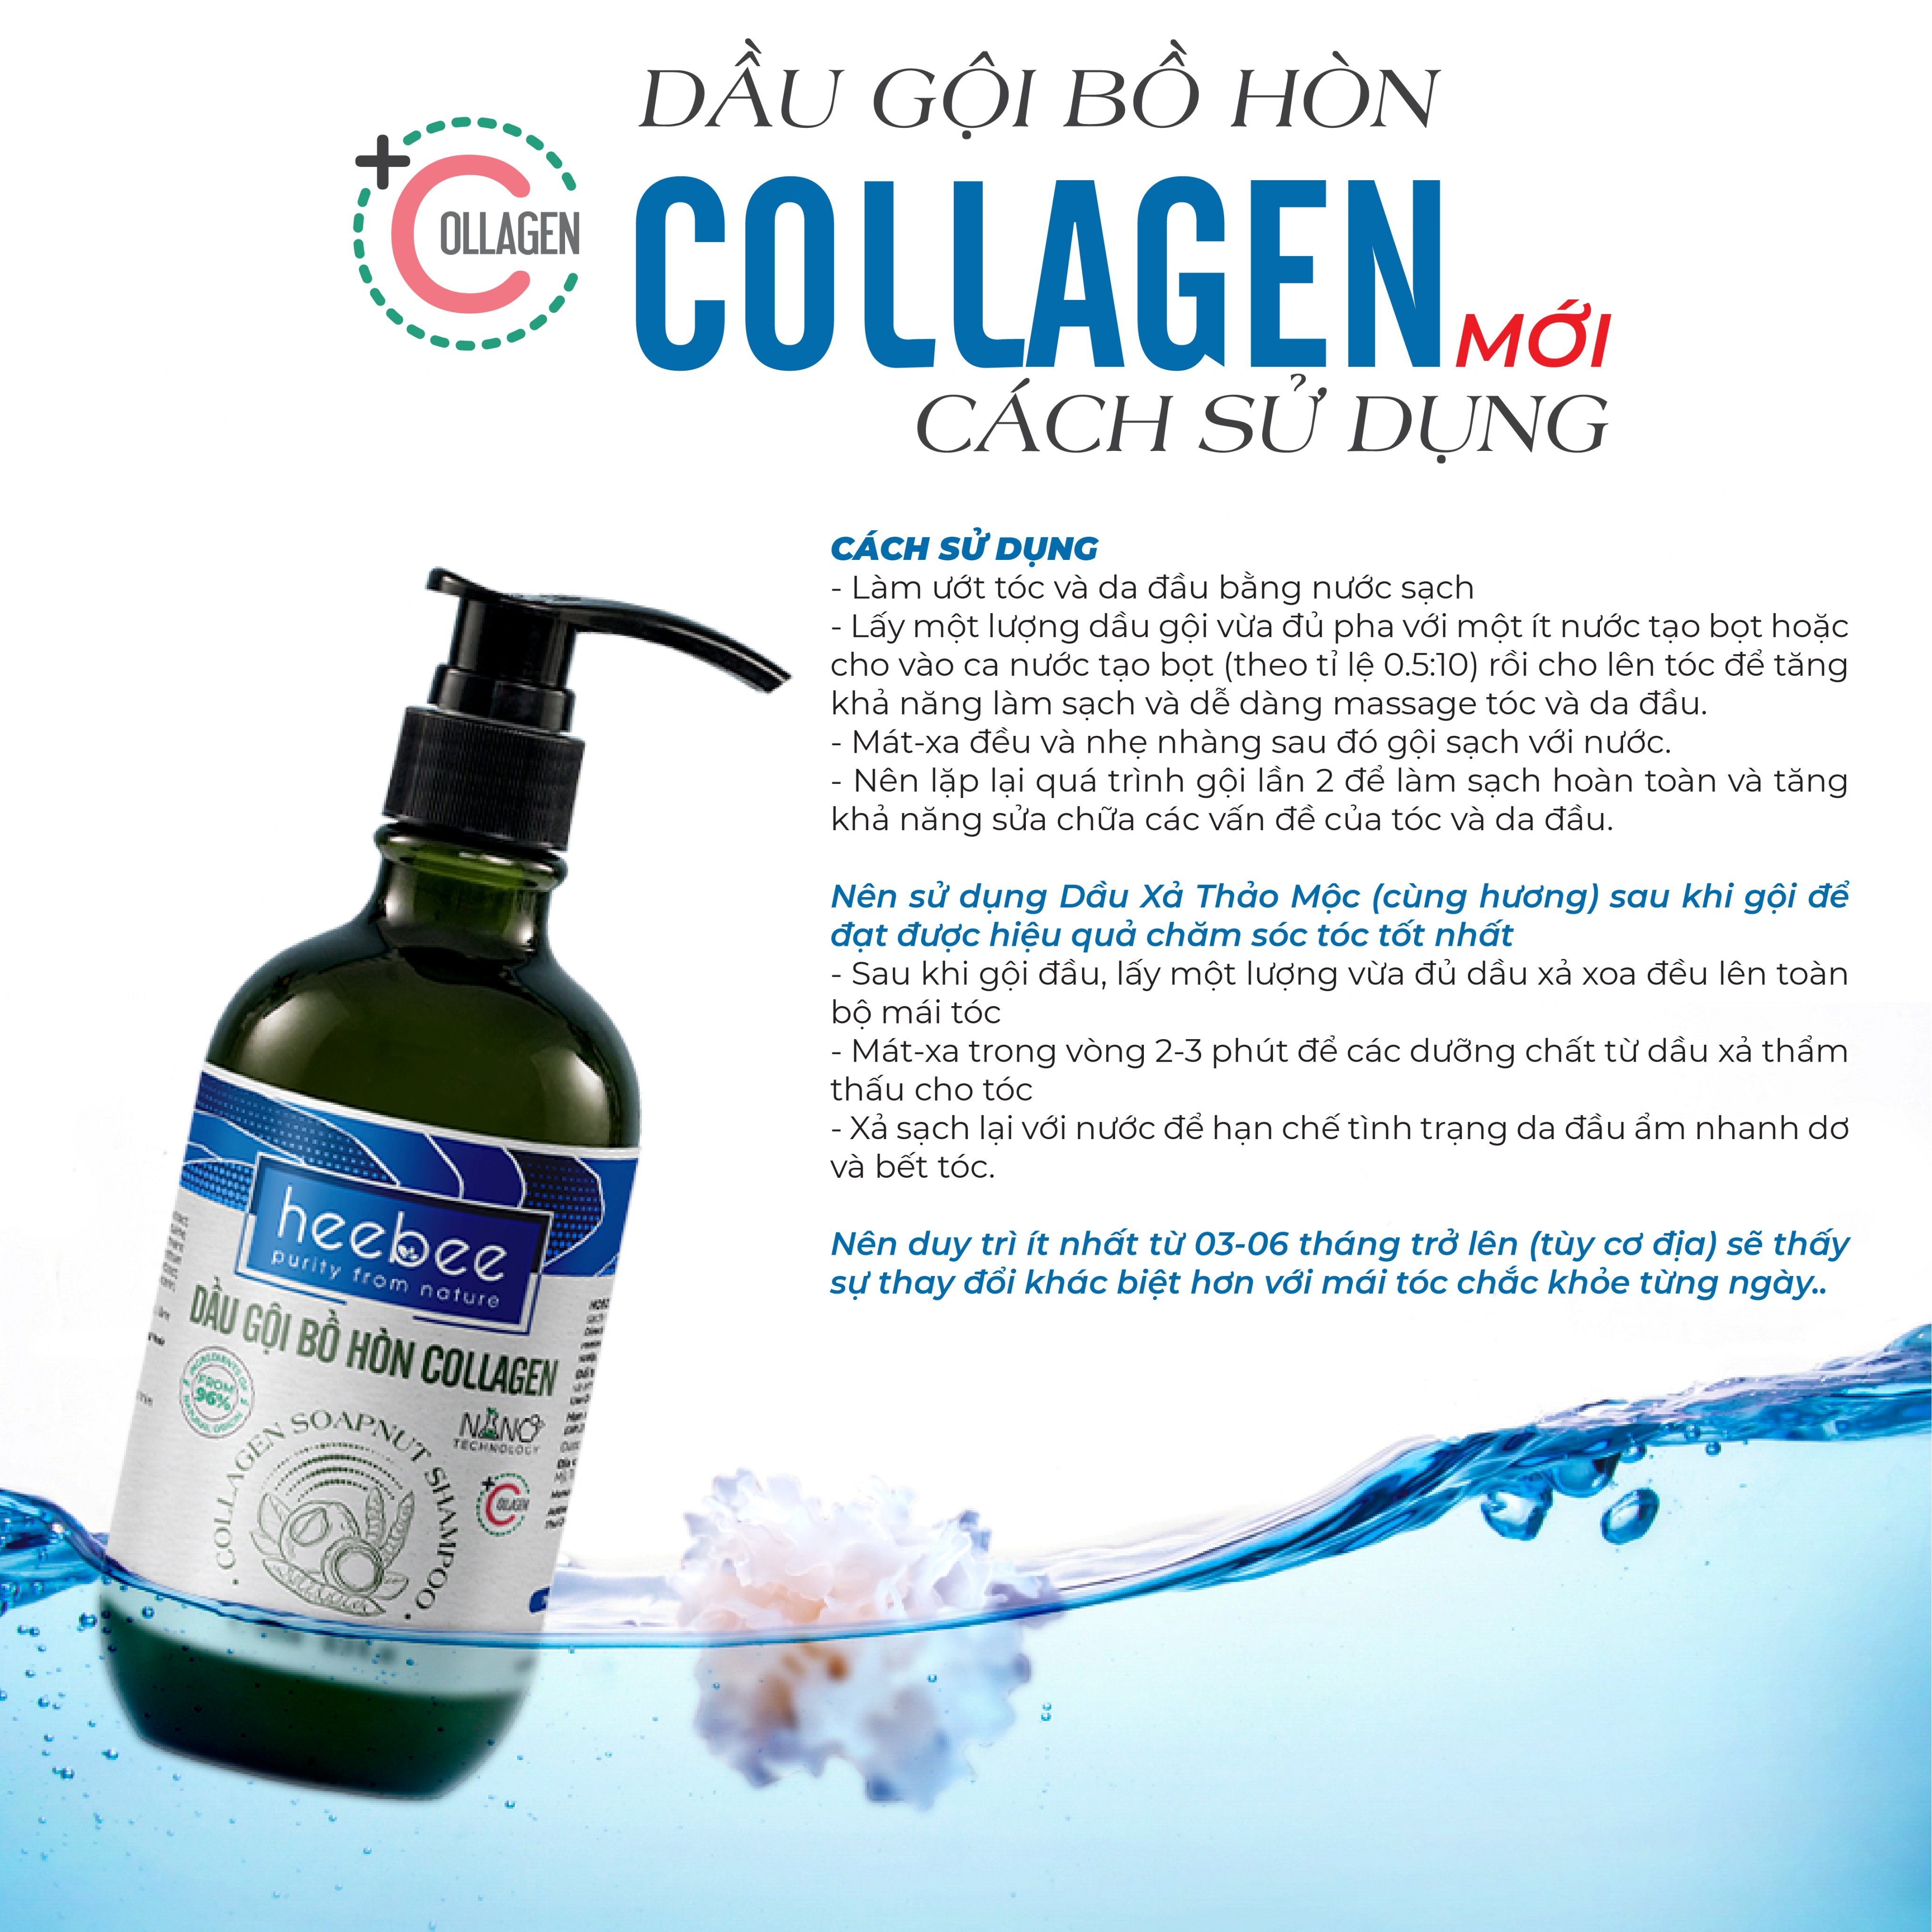 Dầu gội Bồ Hòn Collagen phục hồi tóc hư tổn, ngăn gàu, giảm ngứa - Soapnut Shampoo - Hương Thảo Nguyên 300ml 